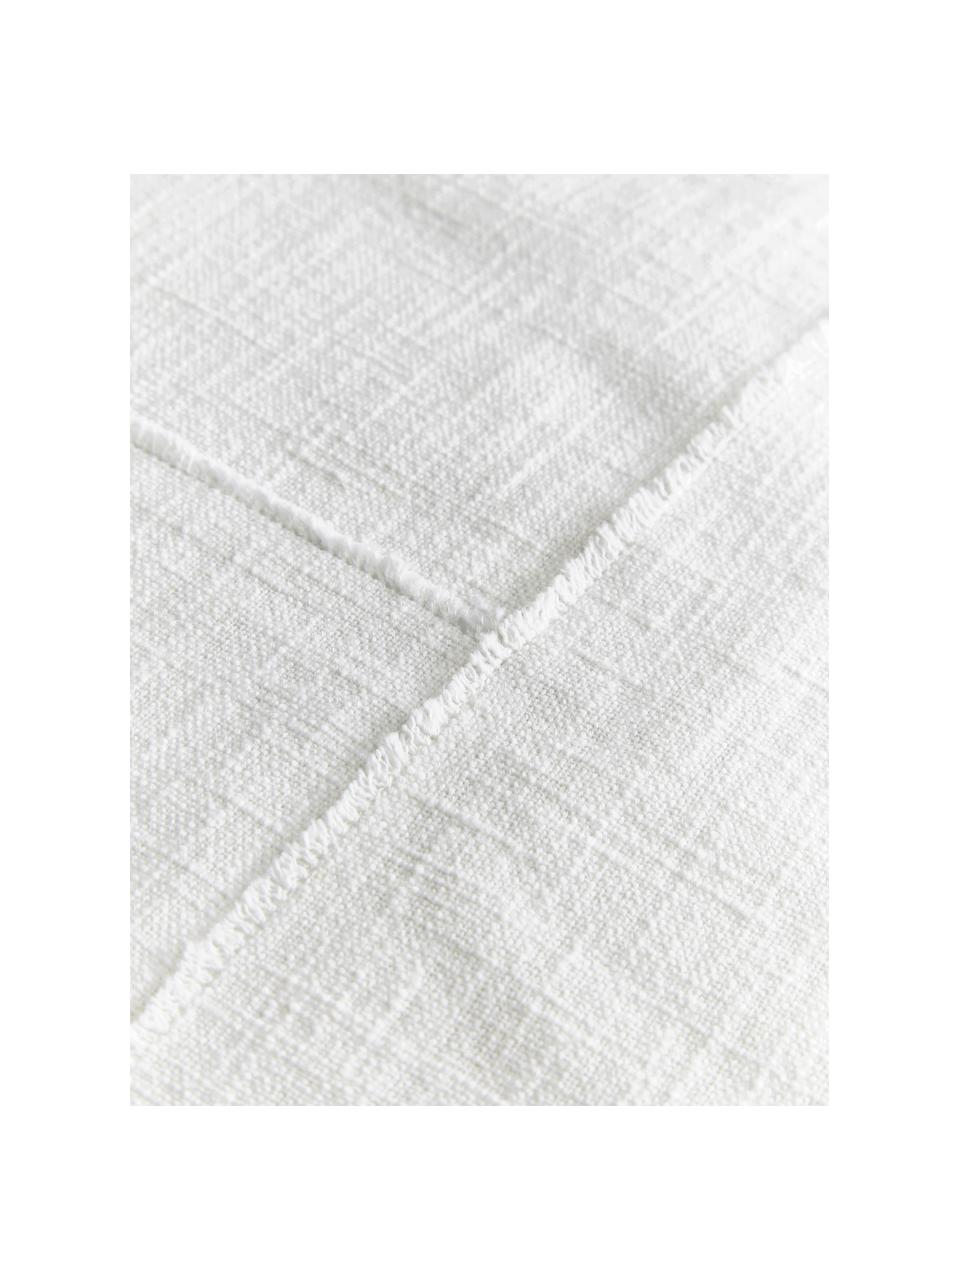 Poszewka na poduszkę z bawełny z przeszyciem Terre, 70% bawełna, 30% len, Biały, S 45 x D 45 cm